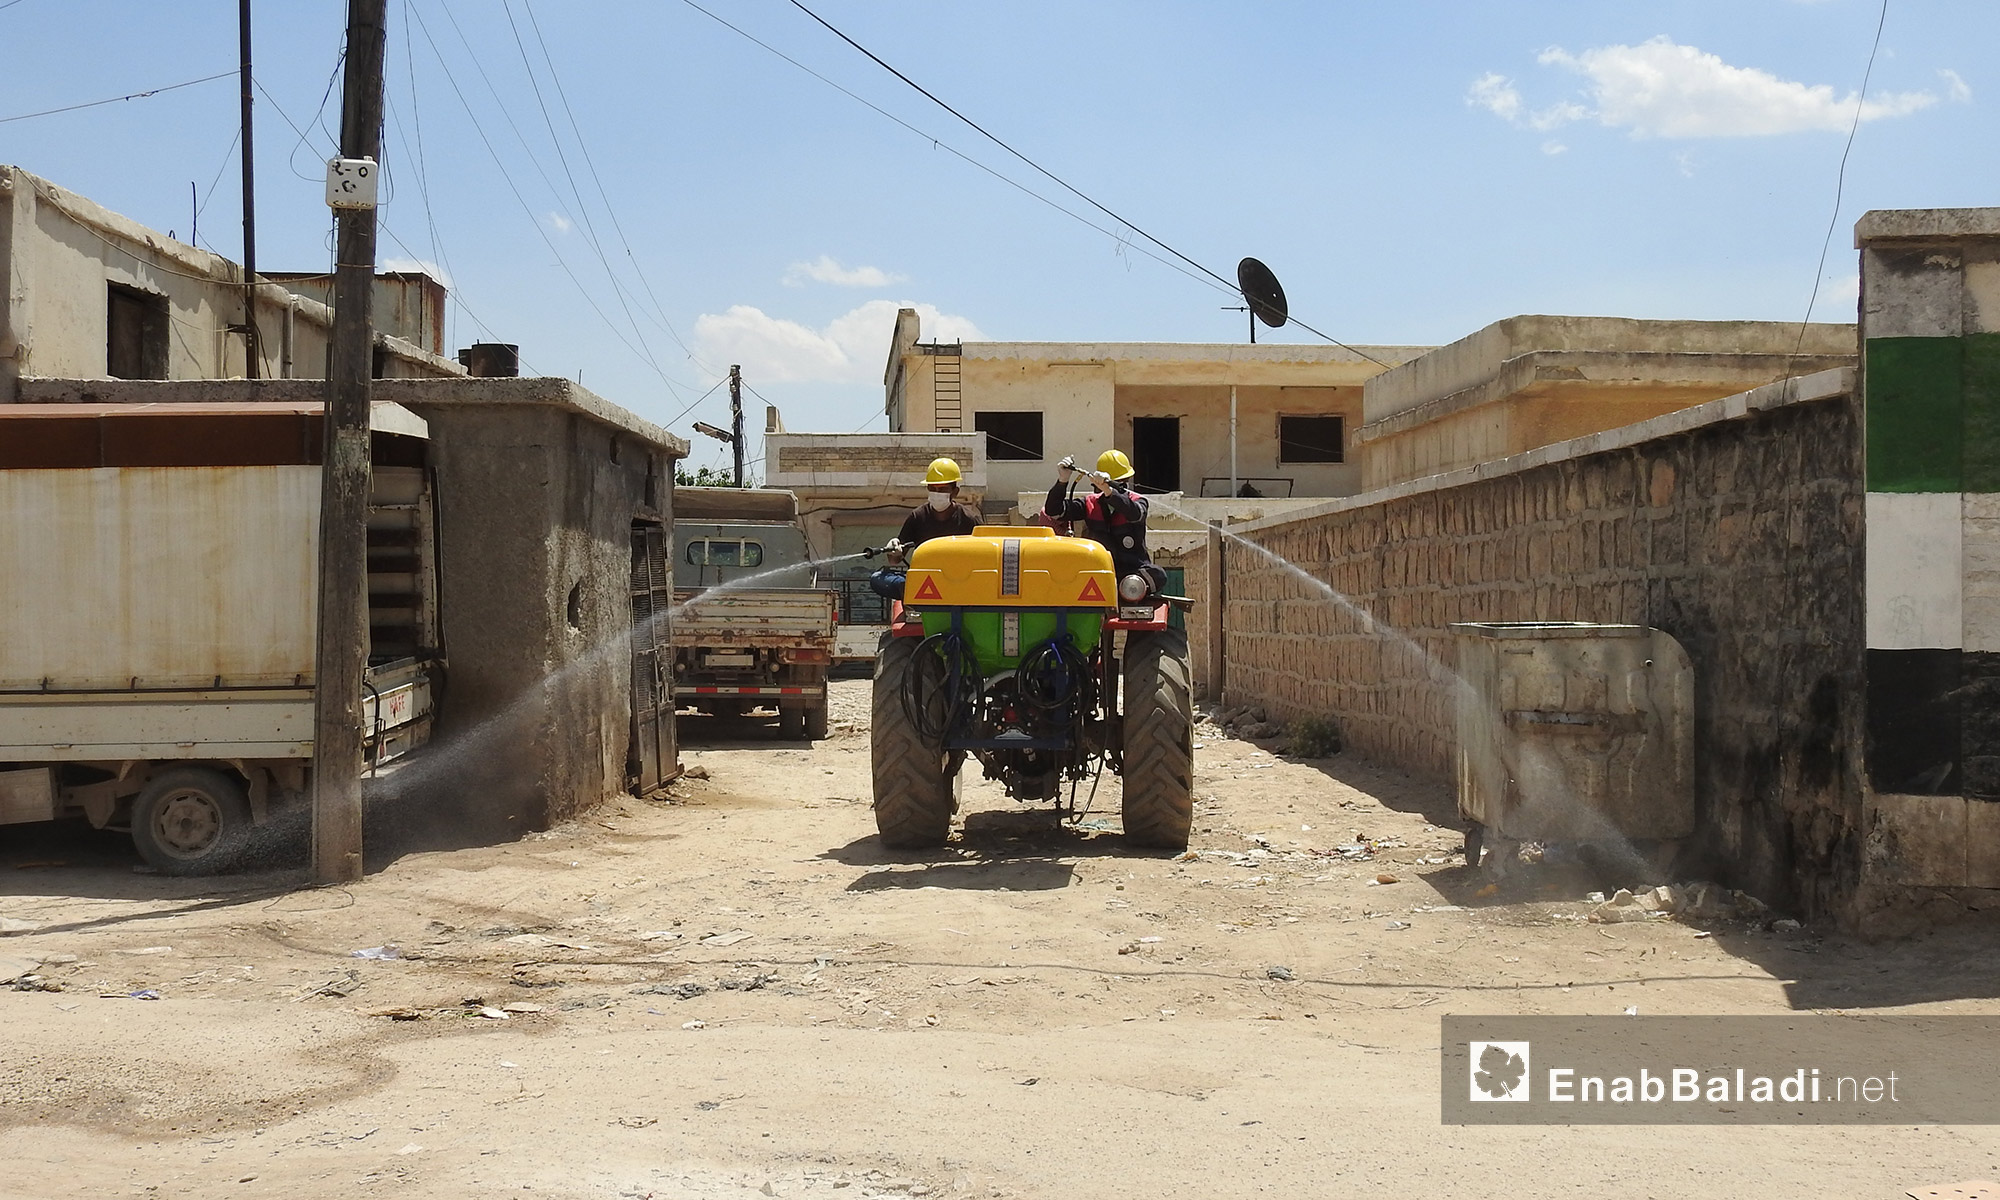 بدء عملية رش المبيدات الحشرية في بلدة صوران شمال حلب  على مرحلتين - 28 أيار 2017 (عنب بلدي)